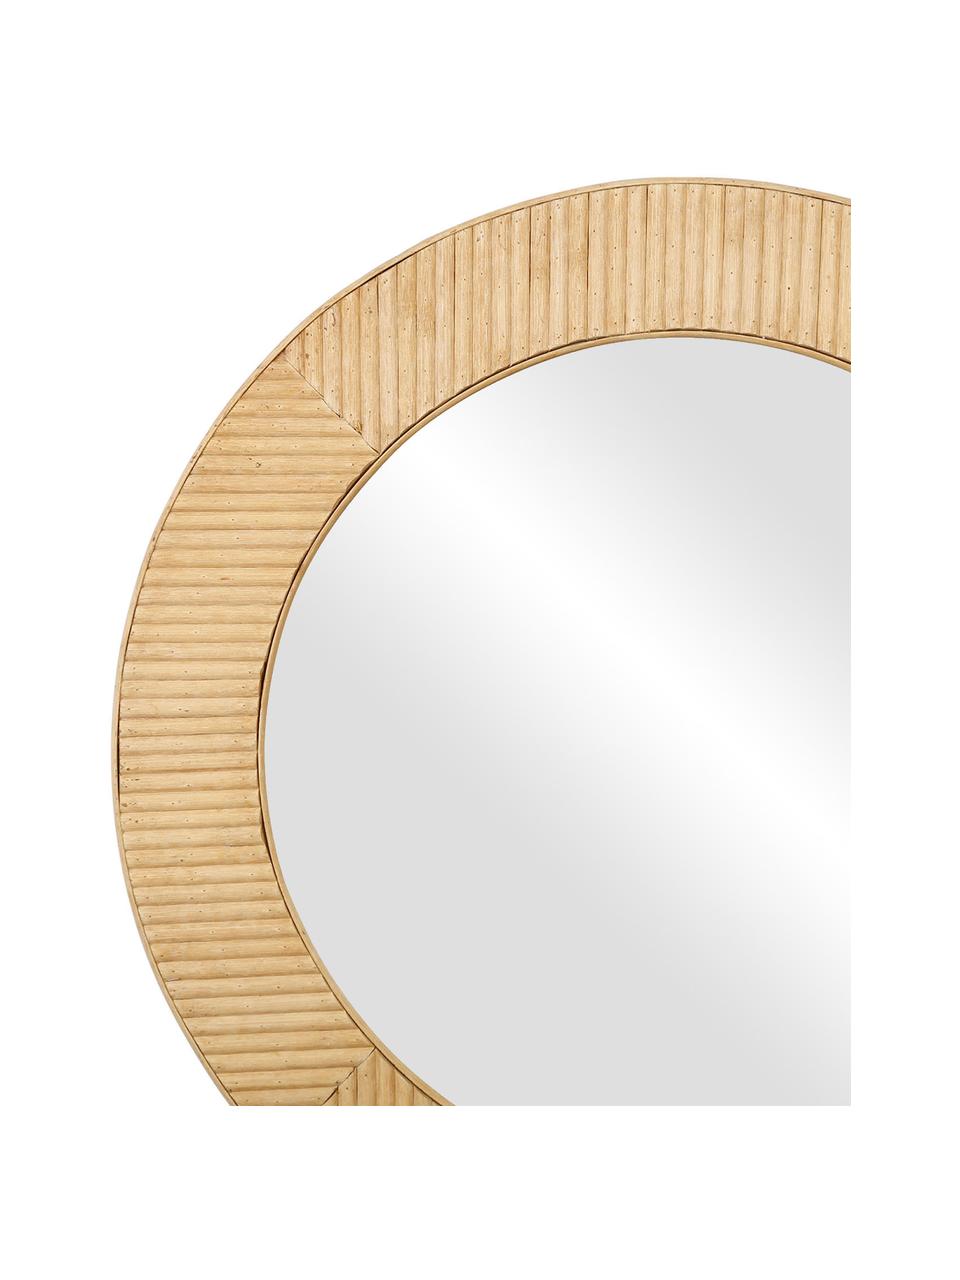 Runder Wandspiegel Solair mit Bambusrahmen, Rahmen: Bambus, Spiegelfläche: Spiegelglas, Bambus, Ø 60 x T 2 cm